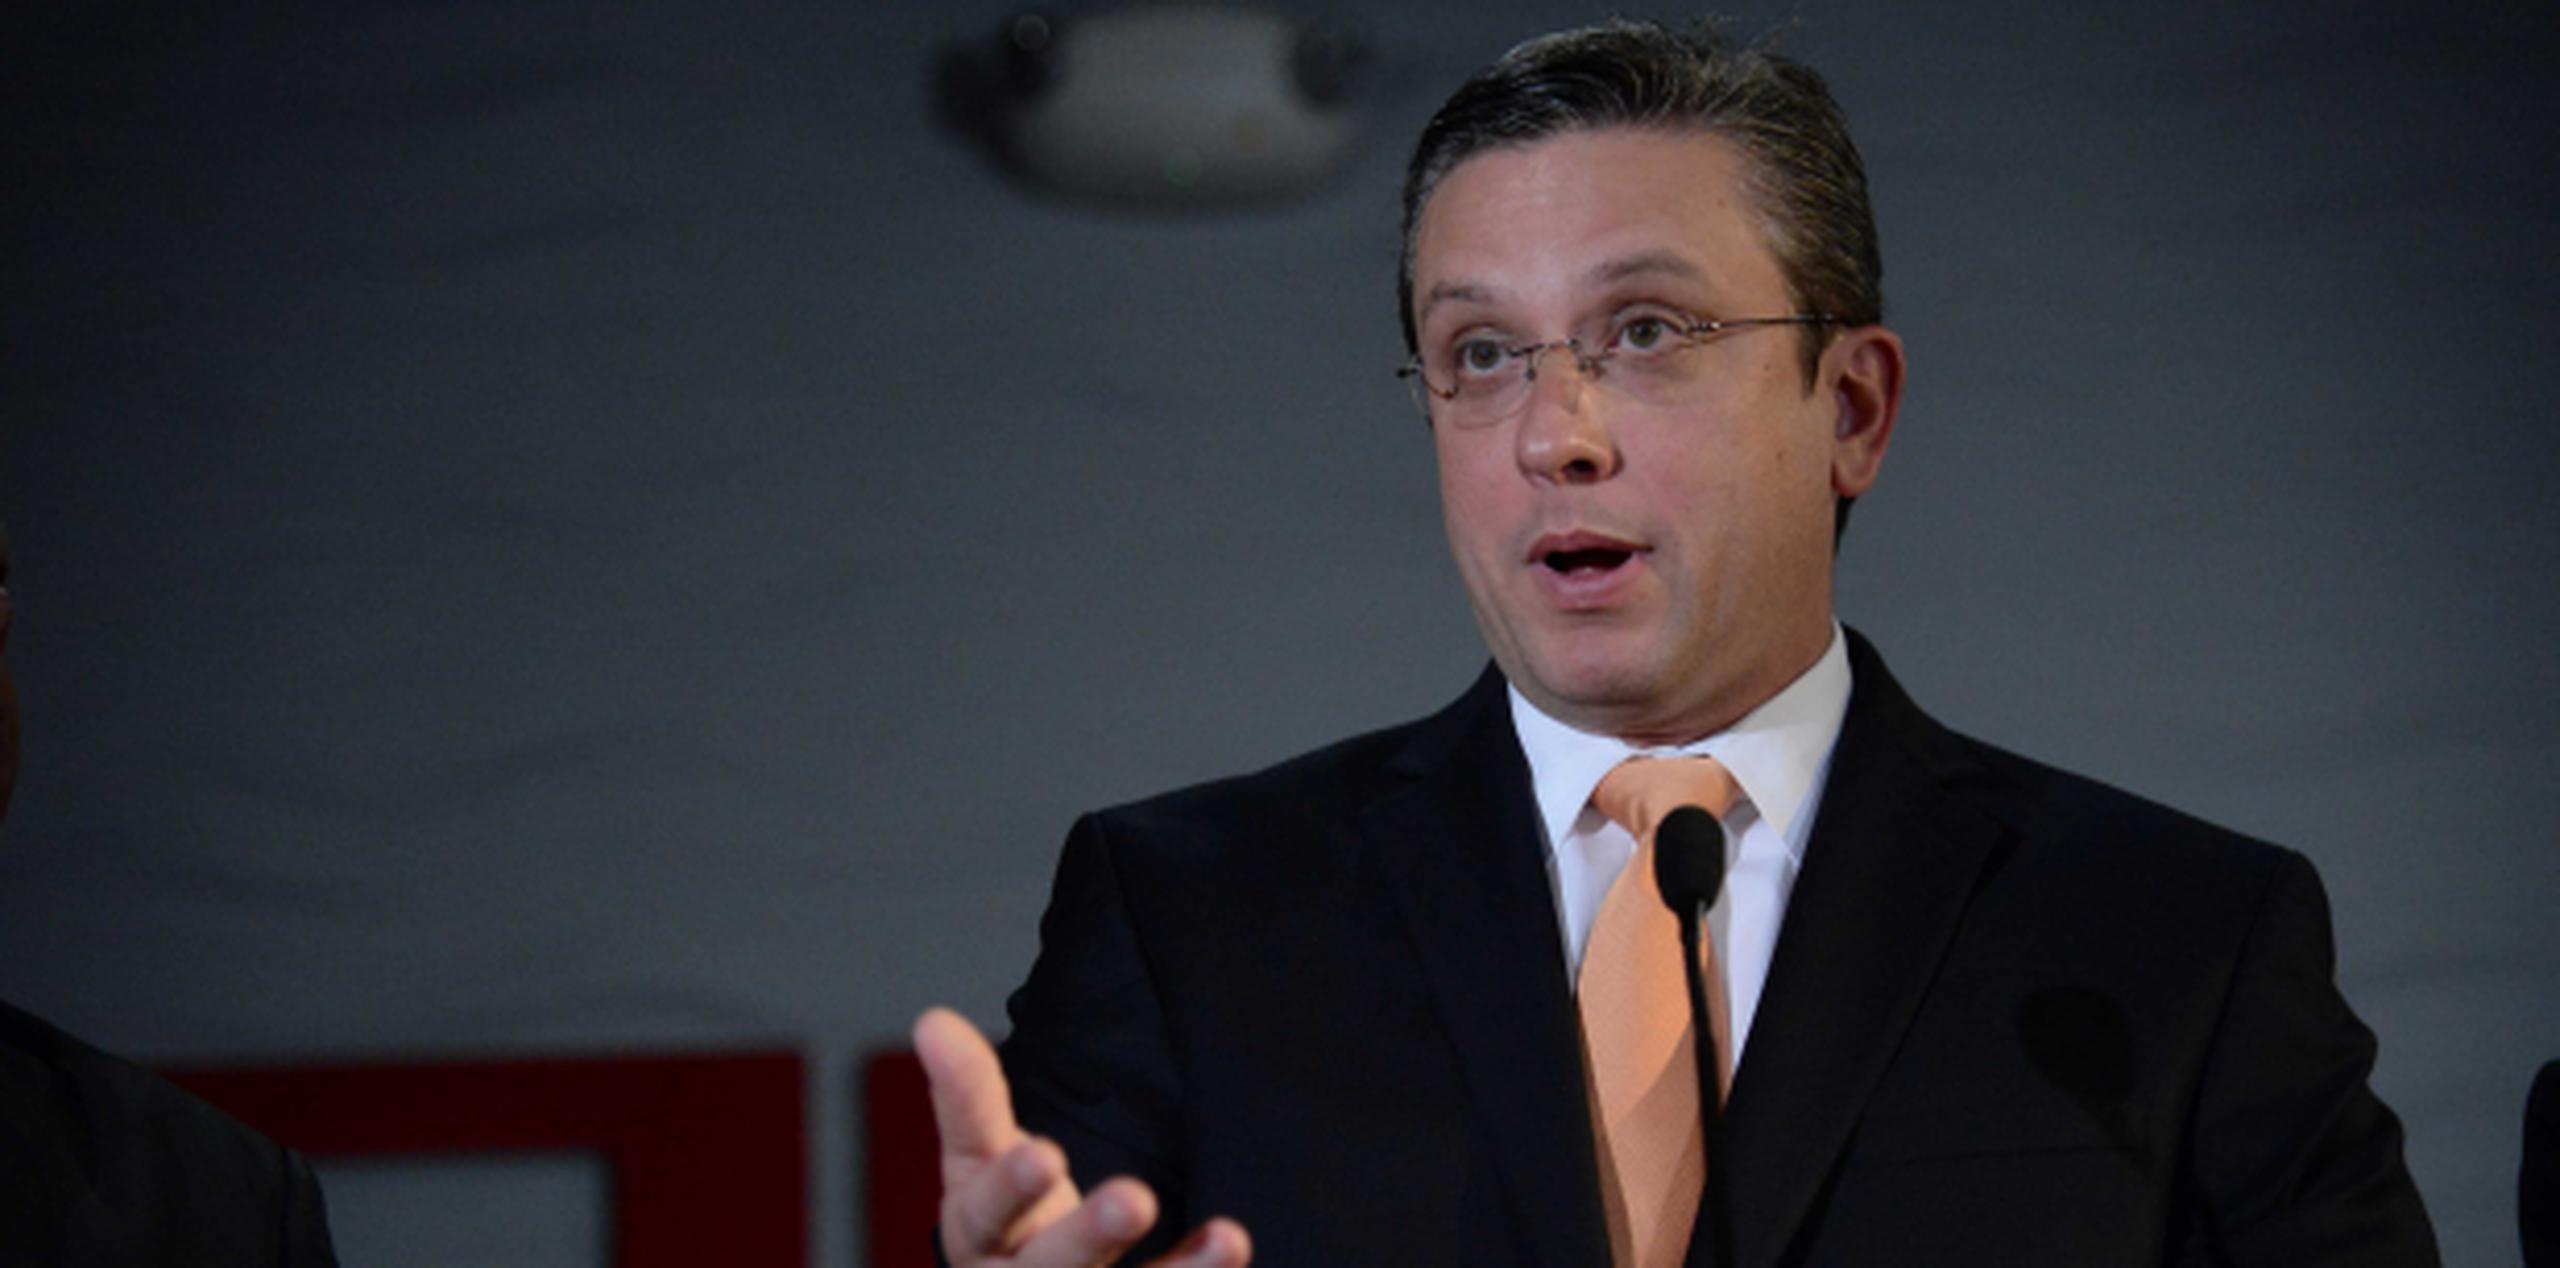 El gobernador Alejandro García Padilla manifestó que la propuesta es considerada por el Ejecutivo y la Legislatura. (Archivo)